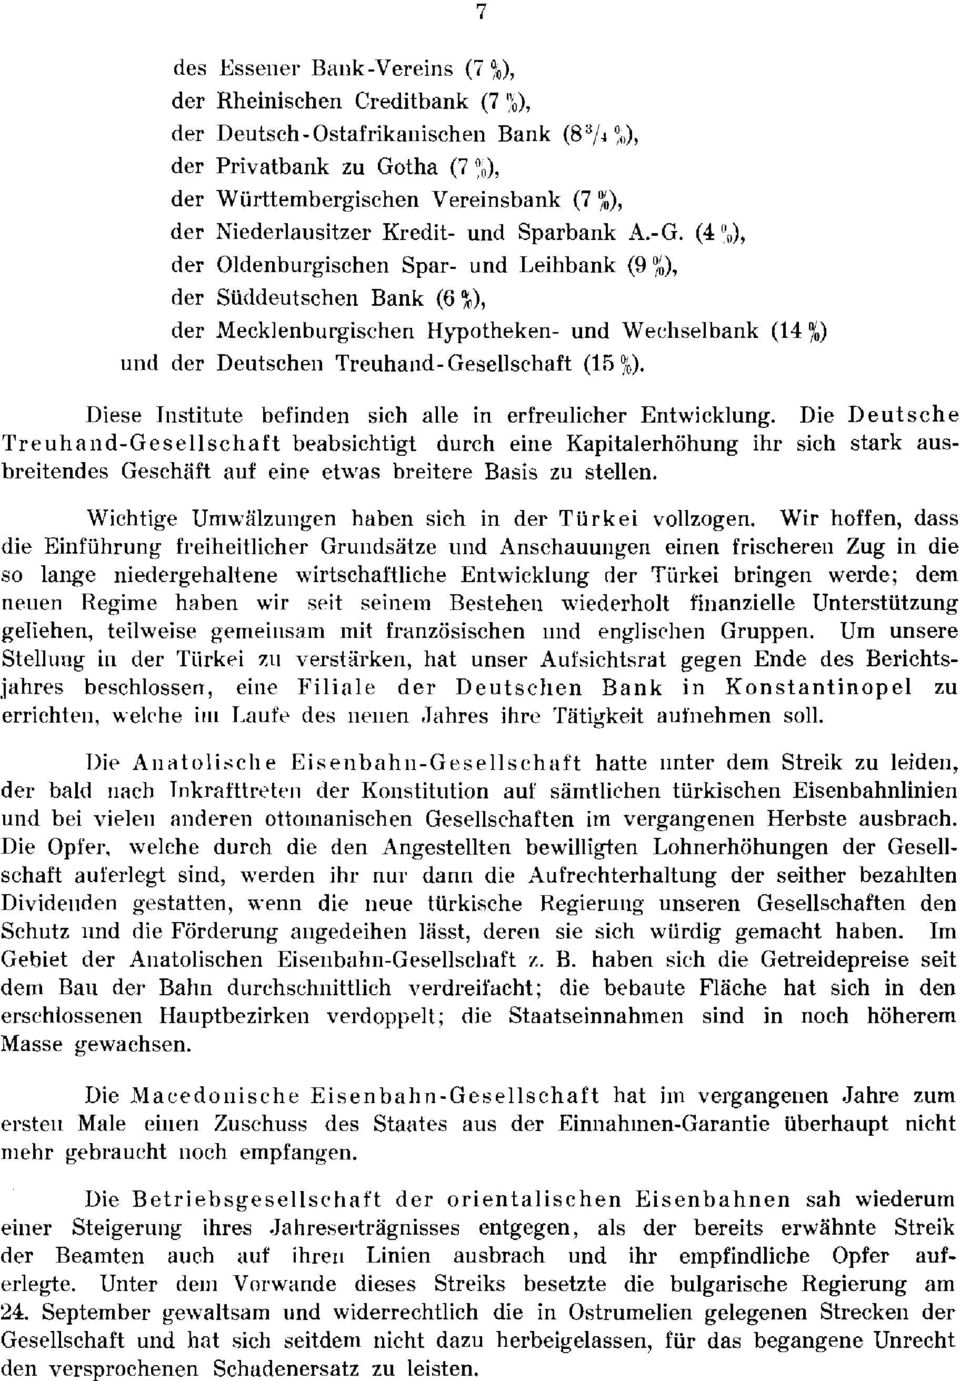 (4 " ), der Oldenburgischen Spar- und Leihbank (9 io), der Sü(1deutschen Bank (6 %), der Mecklenburgischen Hypotheken- und Wecliselbank (14 0/,) uiid der Deutscheii Treuhand-Gesellschaft (16 Ob).